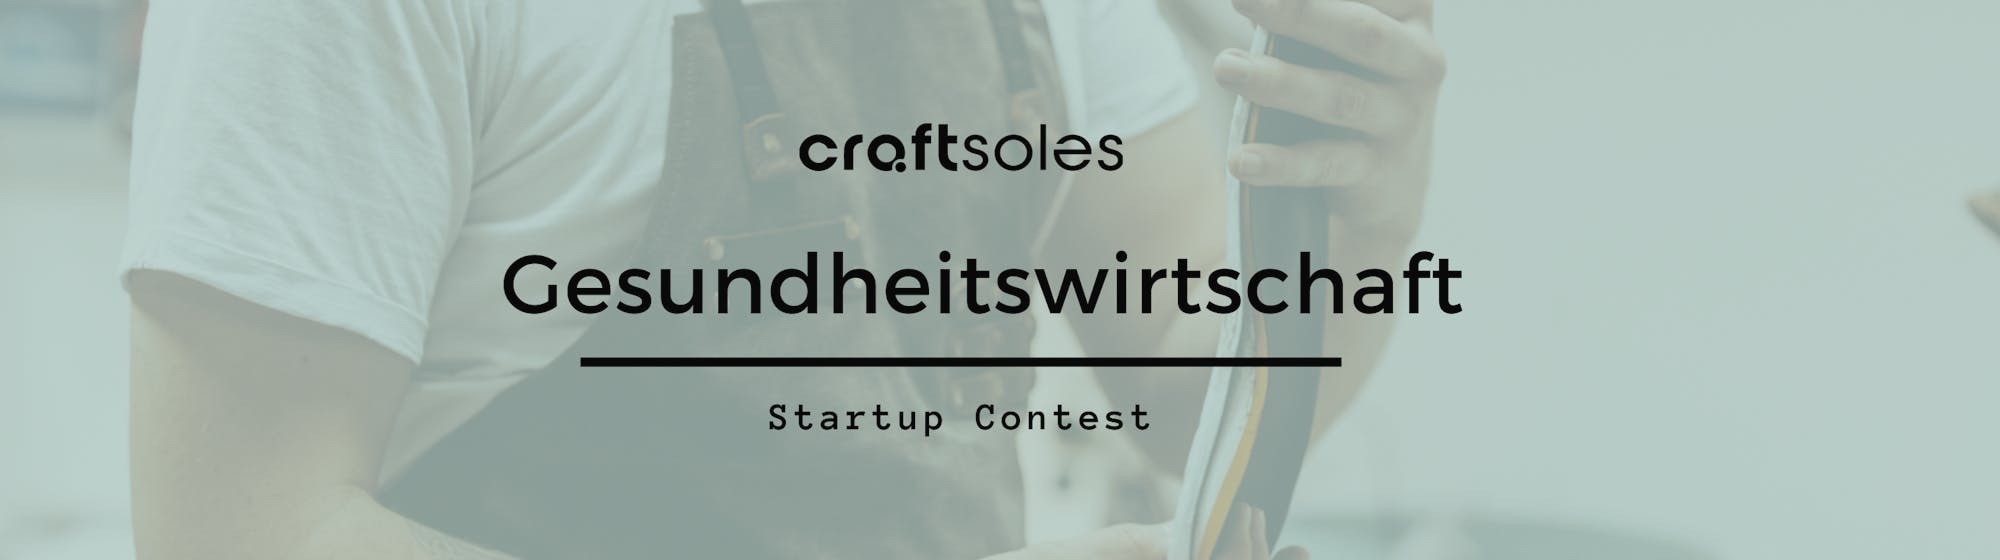 craftsoles Gesundheitswirtschaft Startup Contest